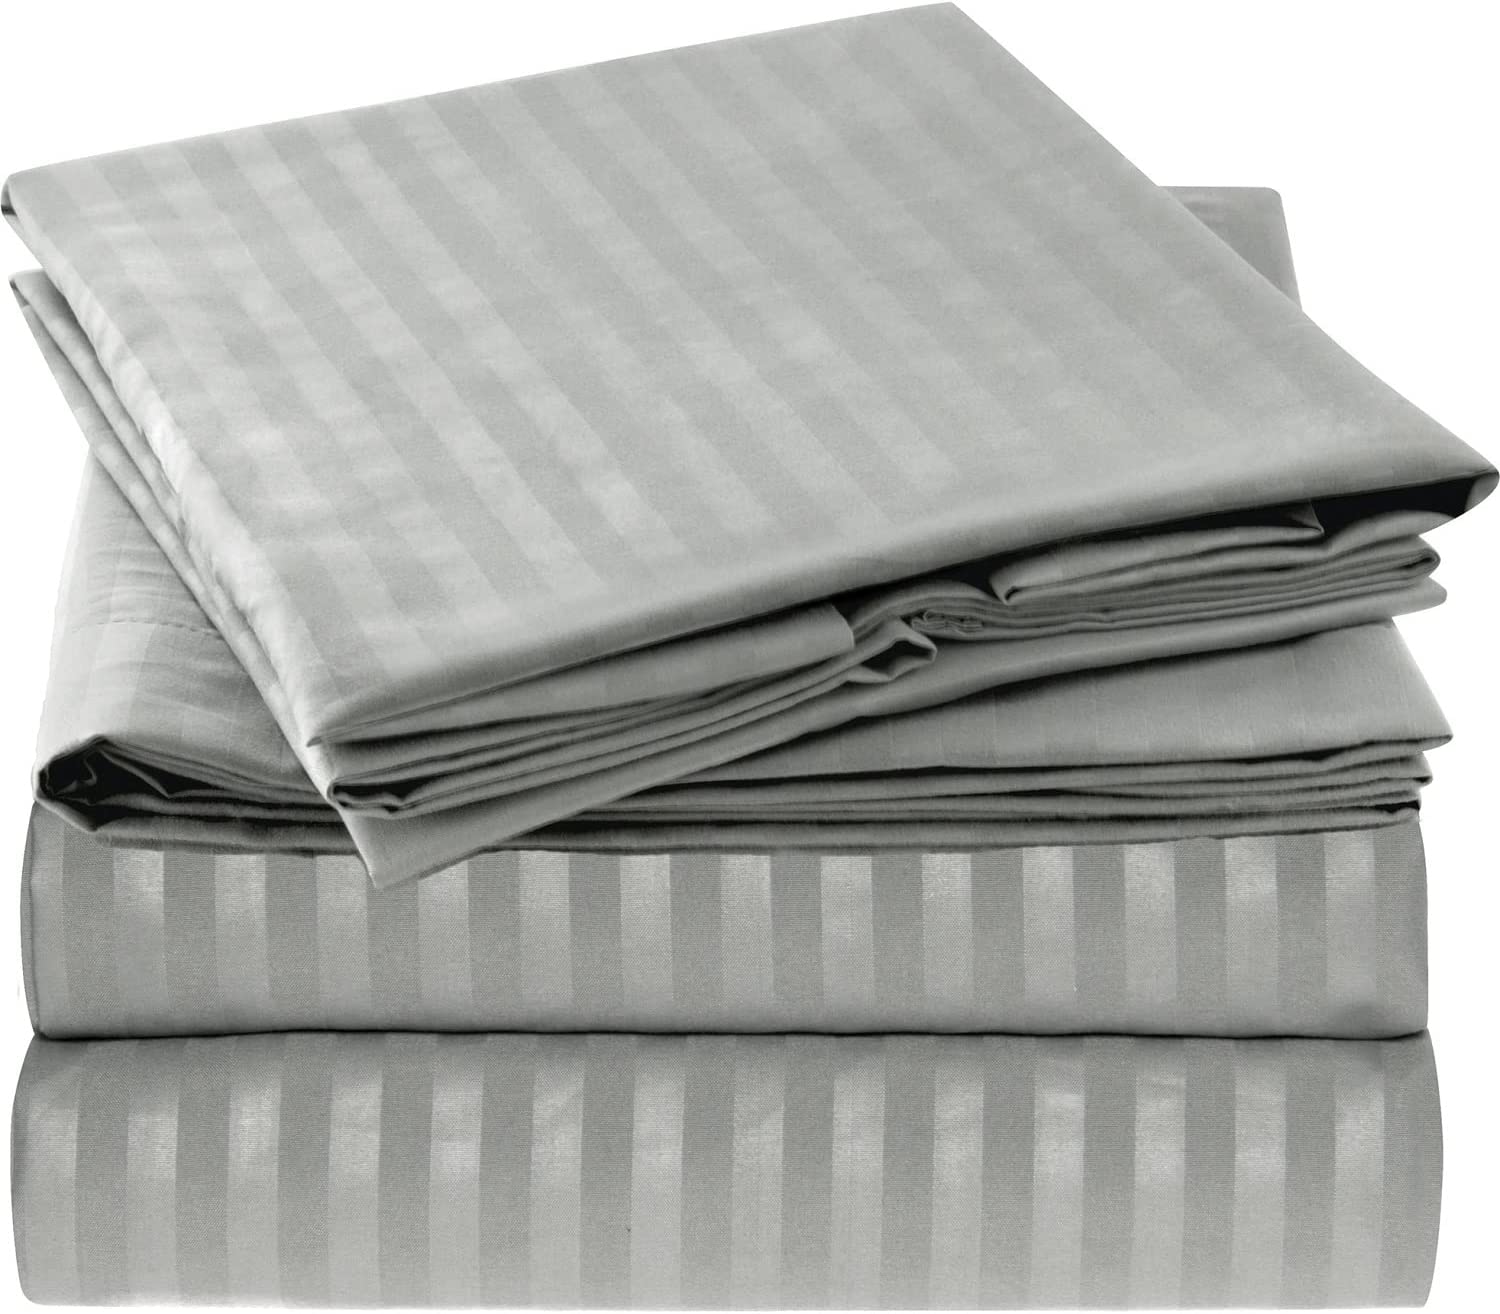 gray striped microfiber sheet set